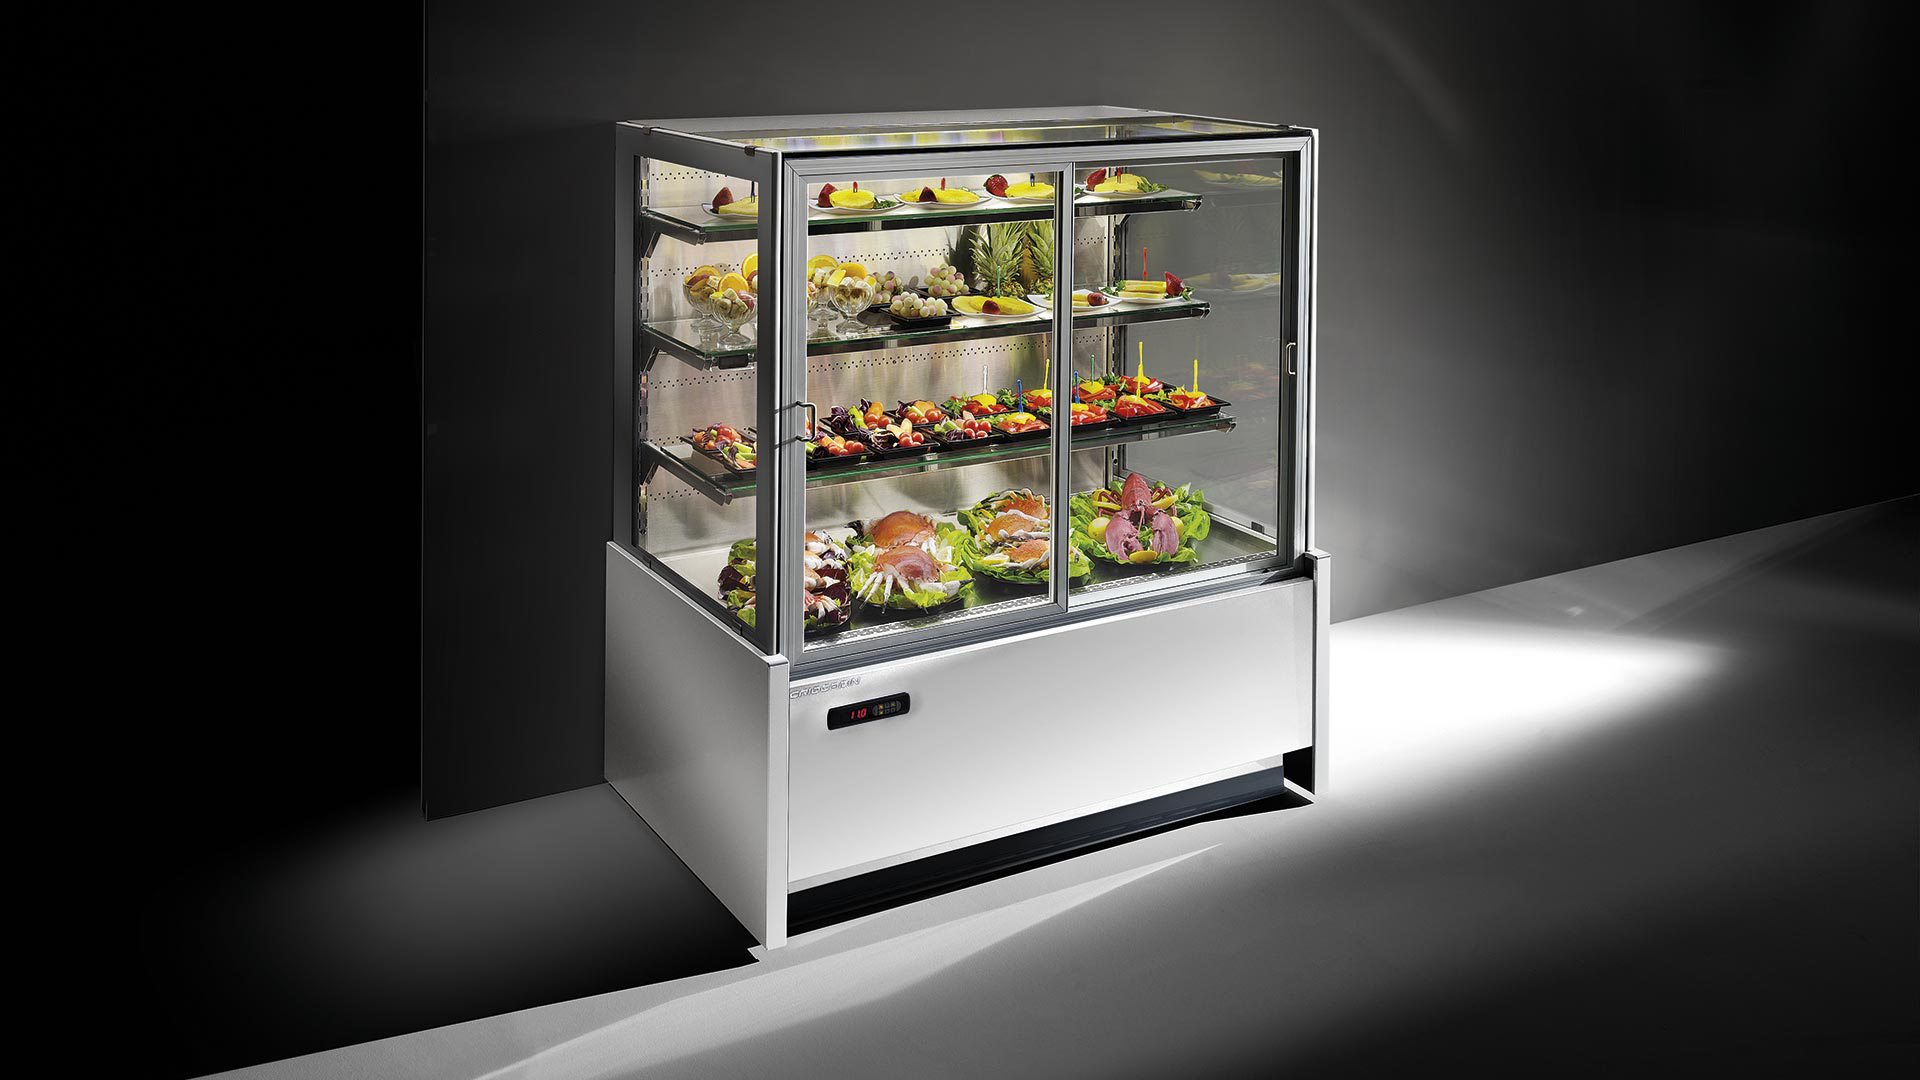 Блок витрины. Холодильные витрина модель Parmida esf201. MVF 328001 холодильный терминал вращающаяся витрина. Холодильная витрина для сэндвичей CTST 1200. Витрина холодильная Elisir 340.